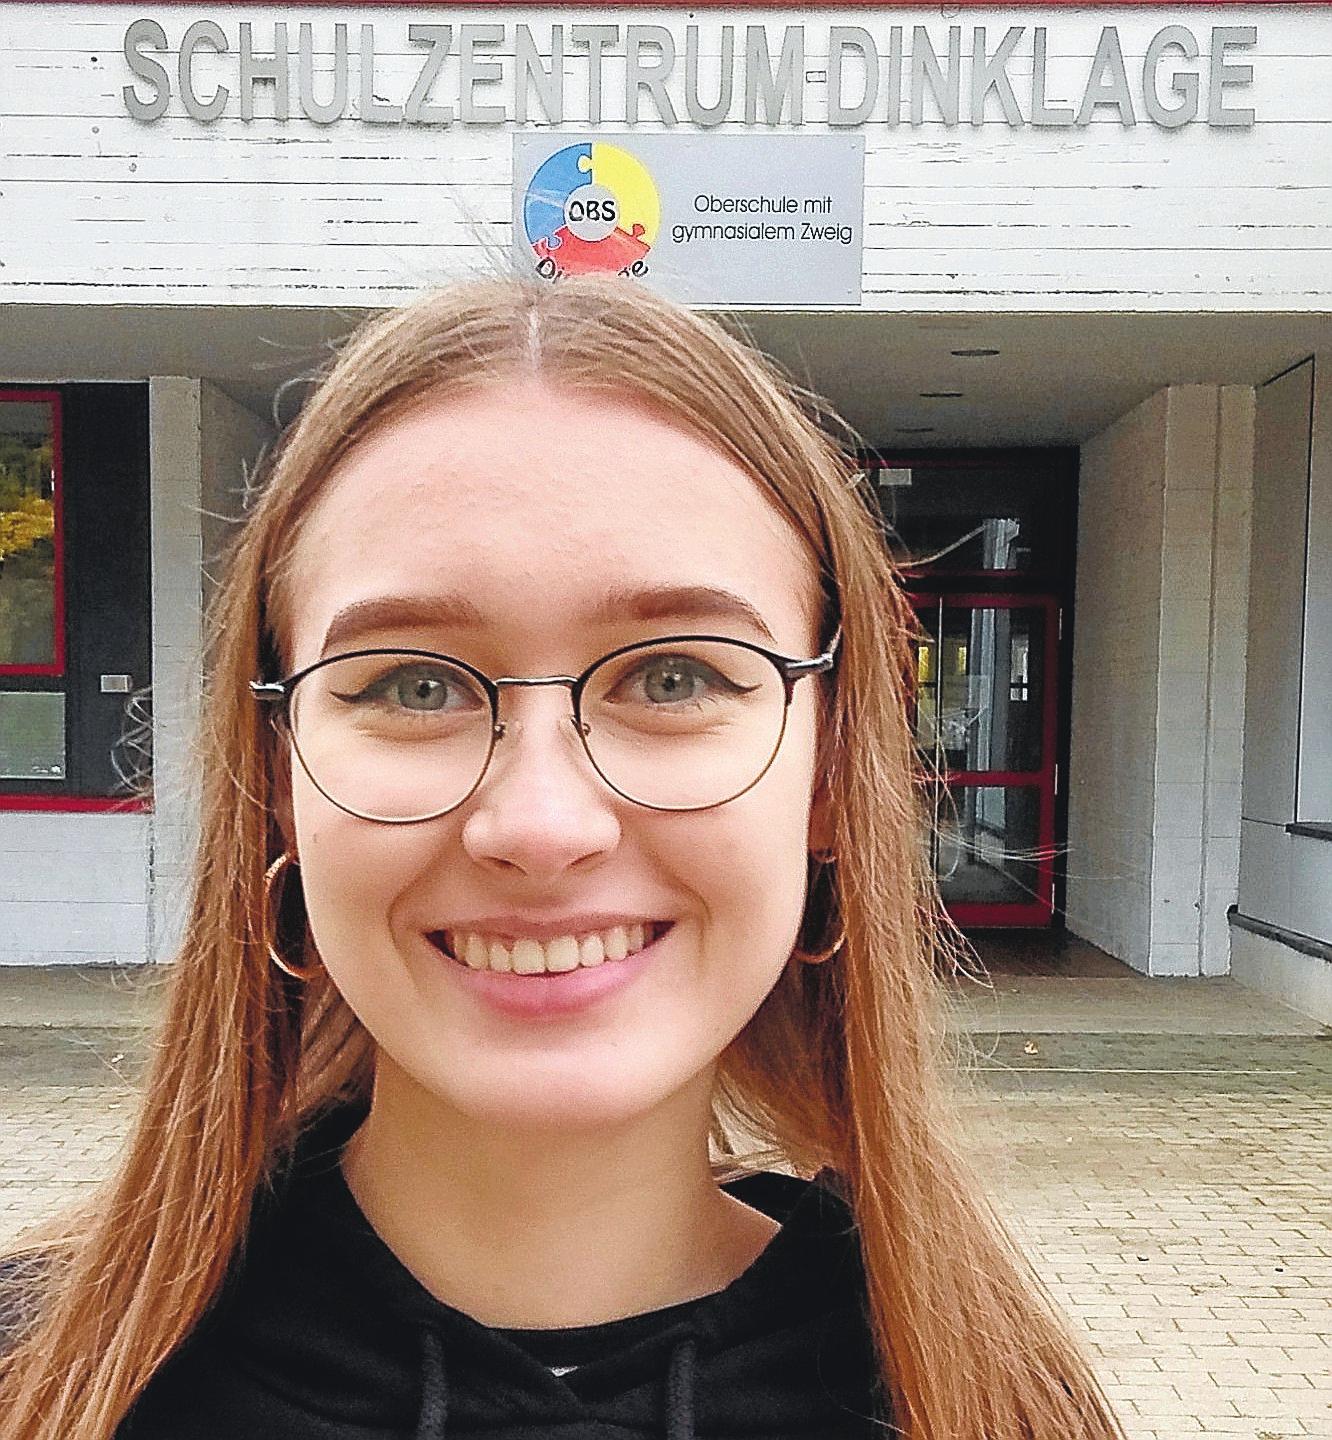 Gymnasiastin und Schulsprecherin: Violetta Frellich lobt die kurzen Wege zur Oberschule Dinklage mit gymnasialem Zweig.